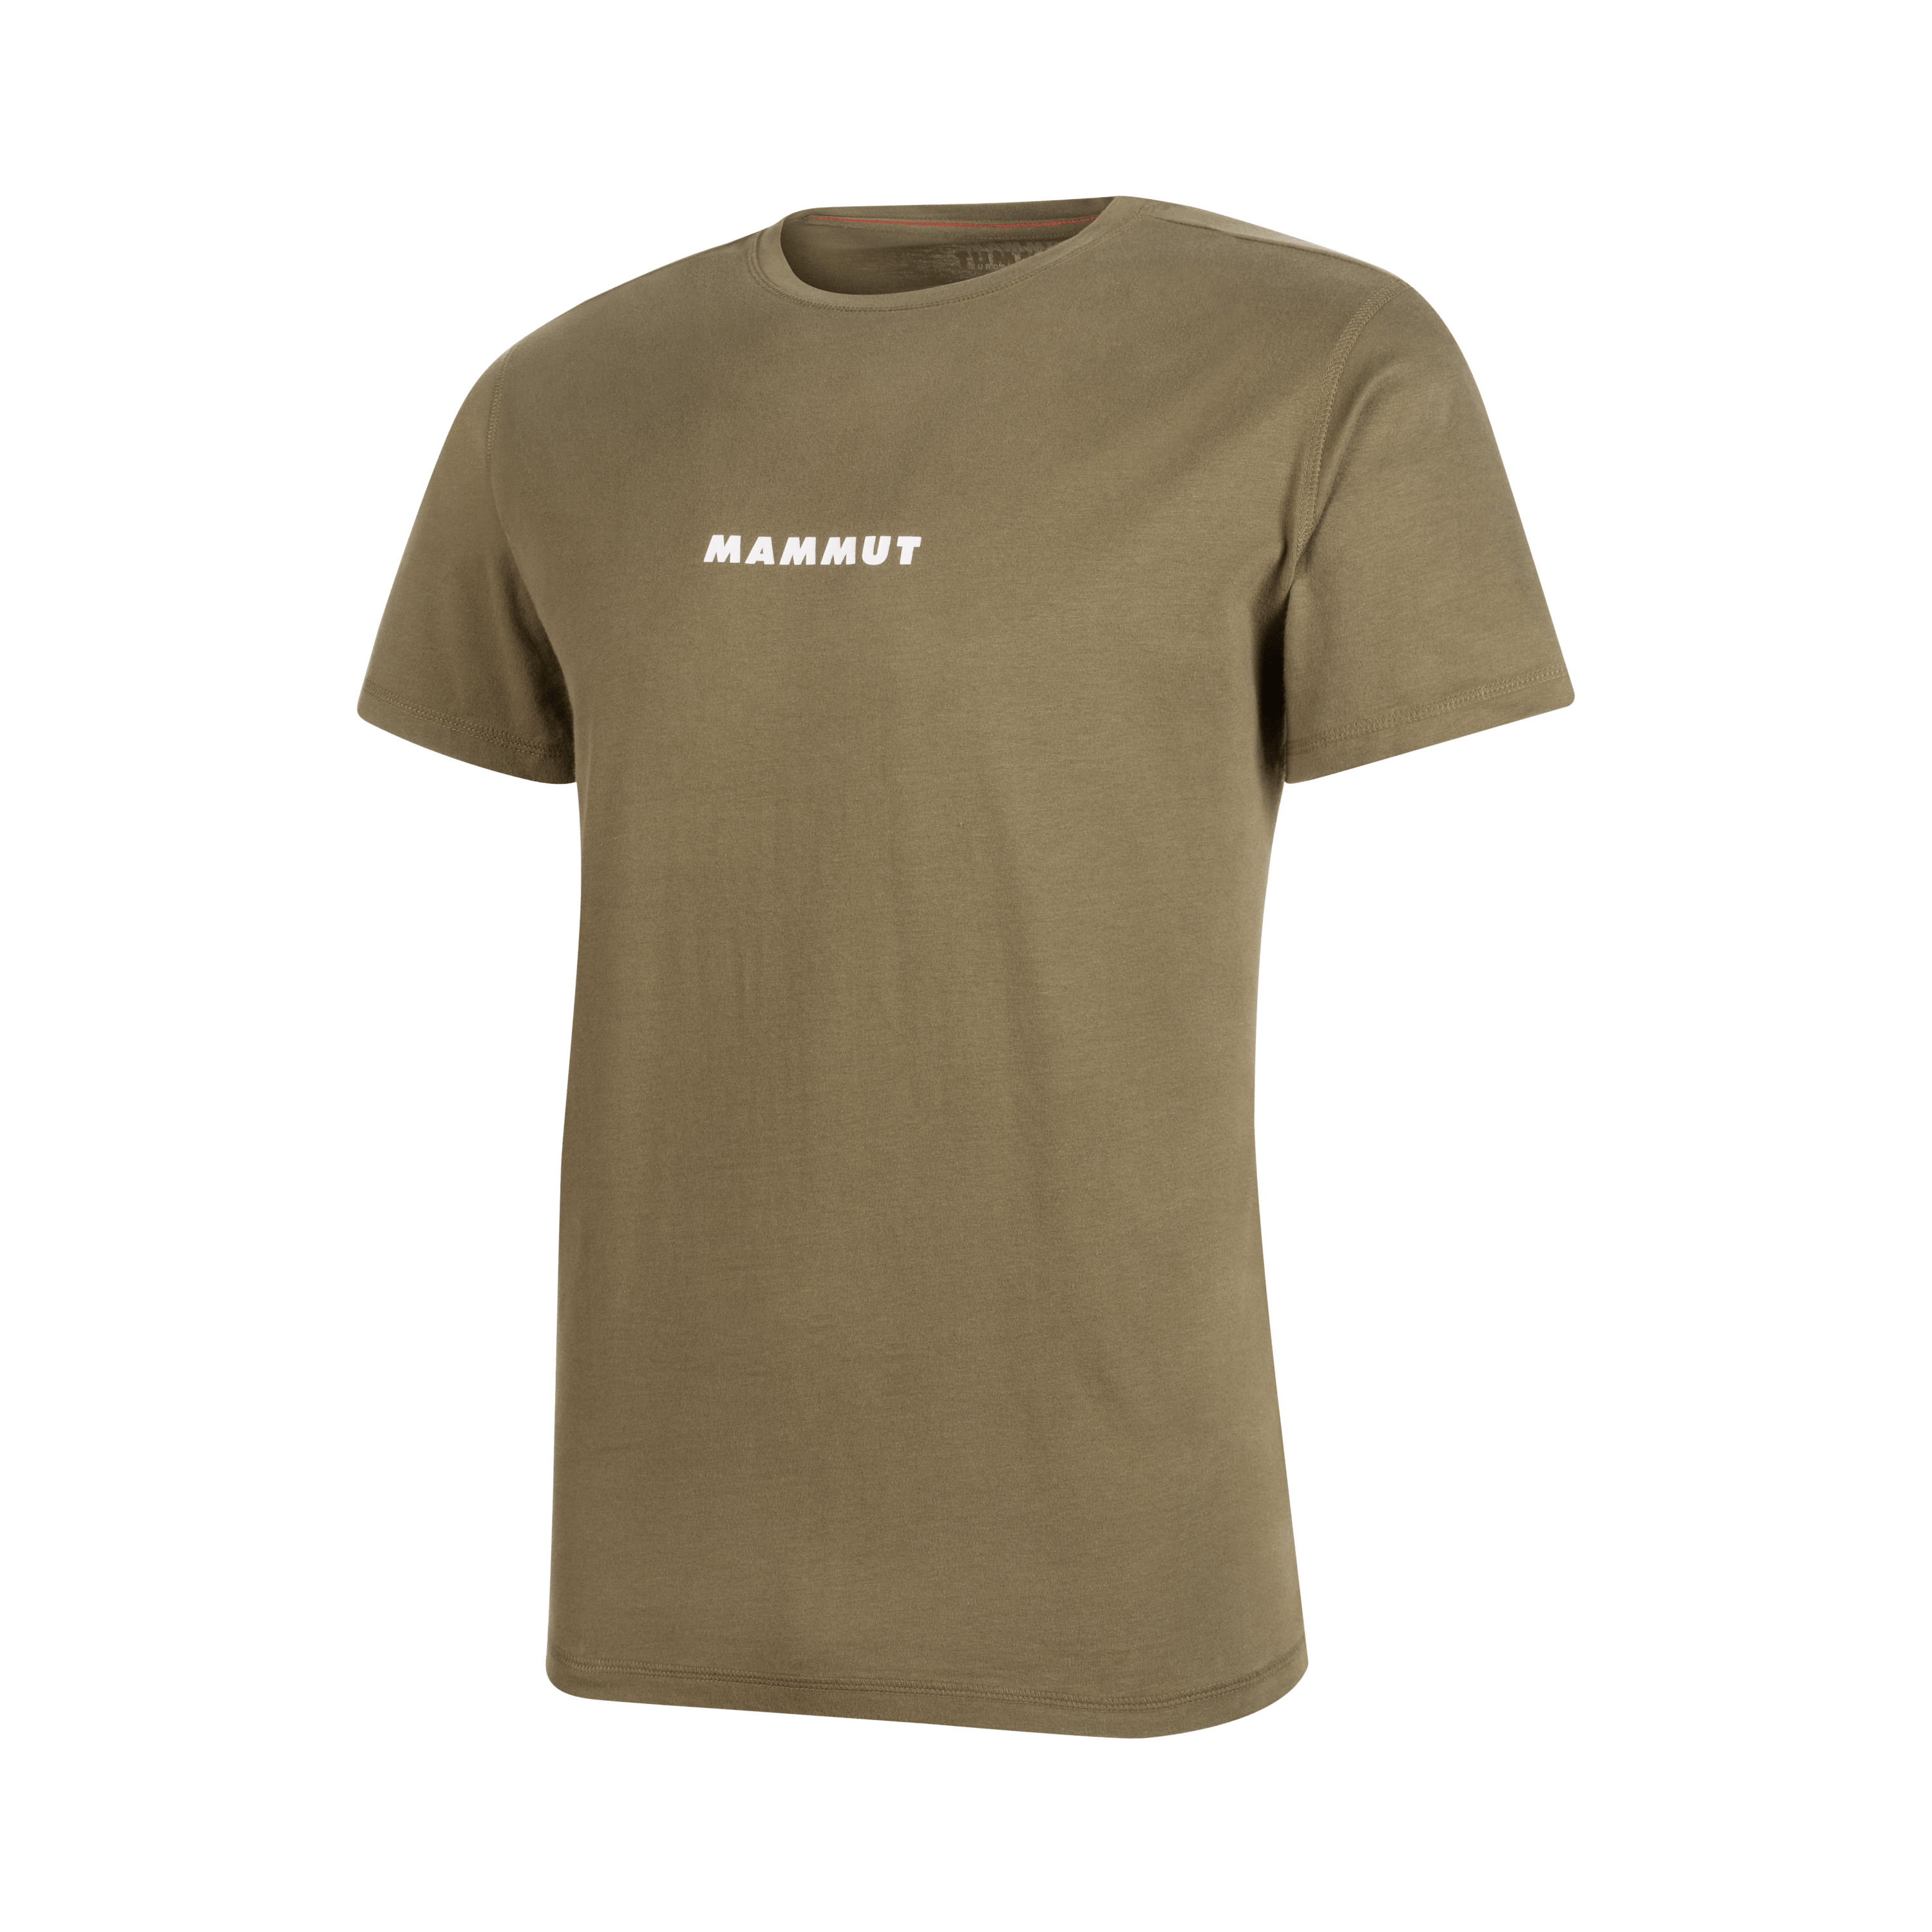 Mammut T-Shirt Men